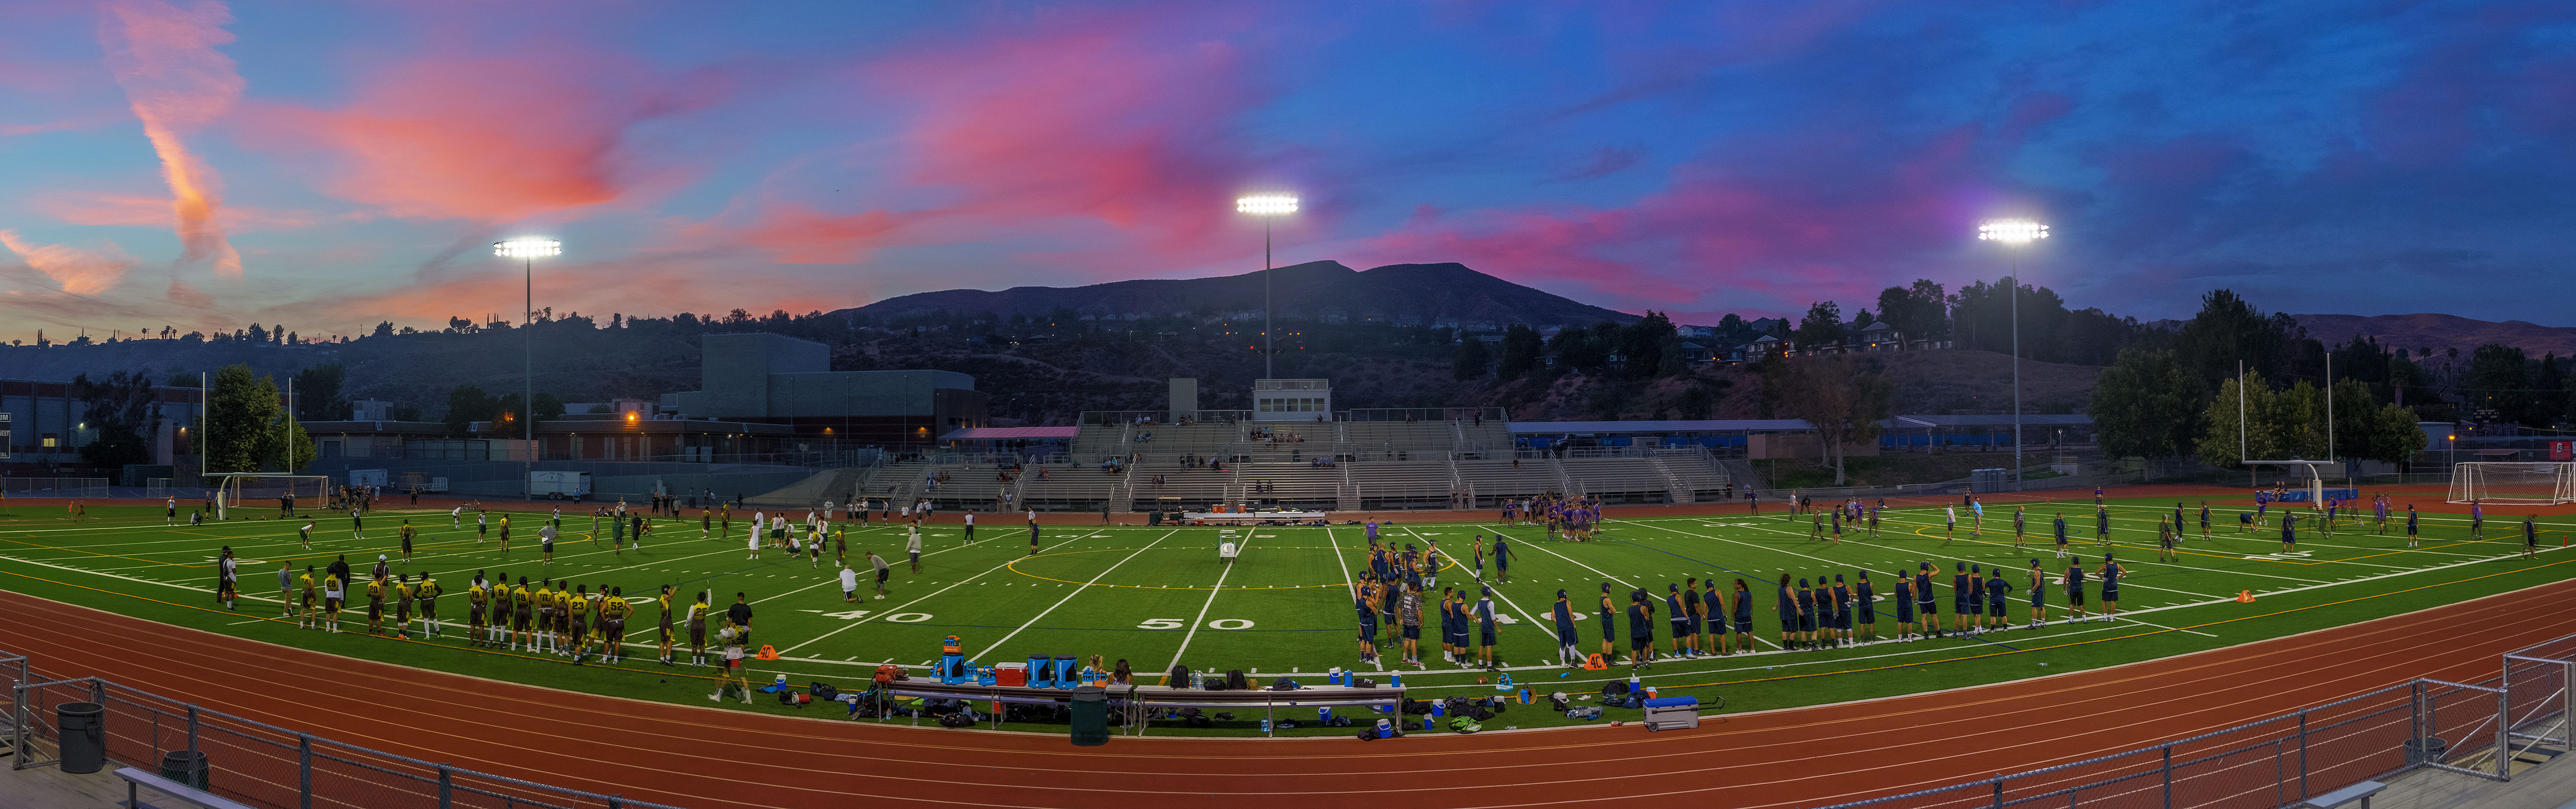 Sunset Football, Saugus High School